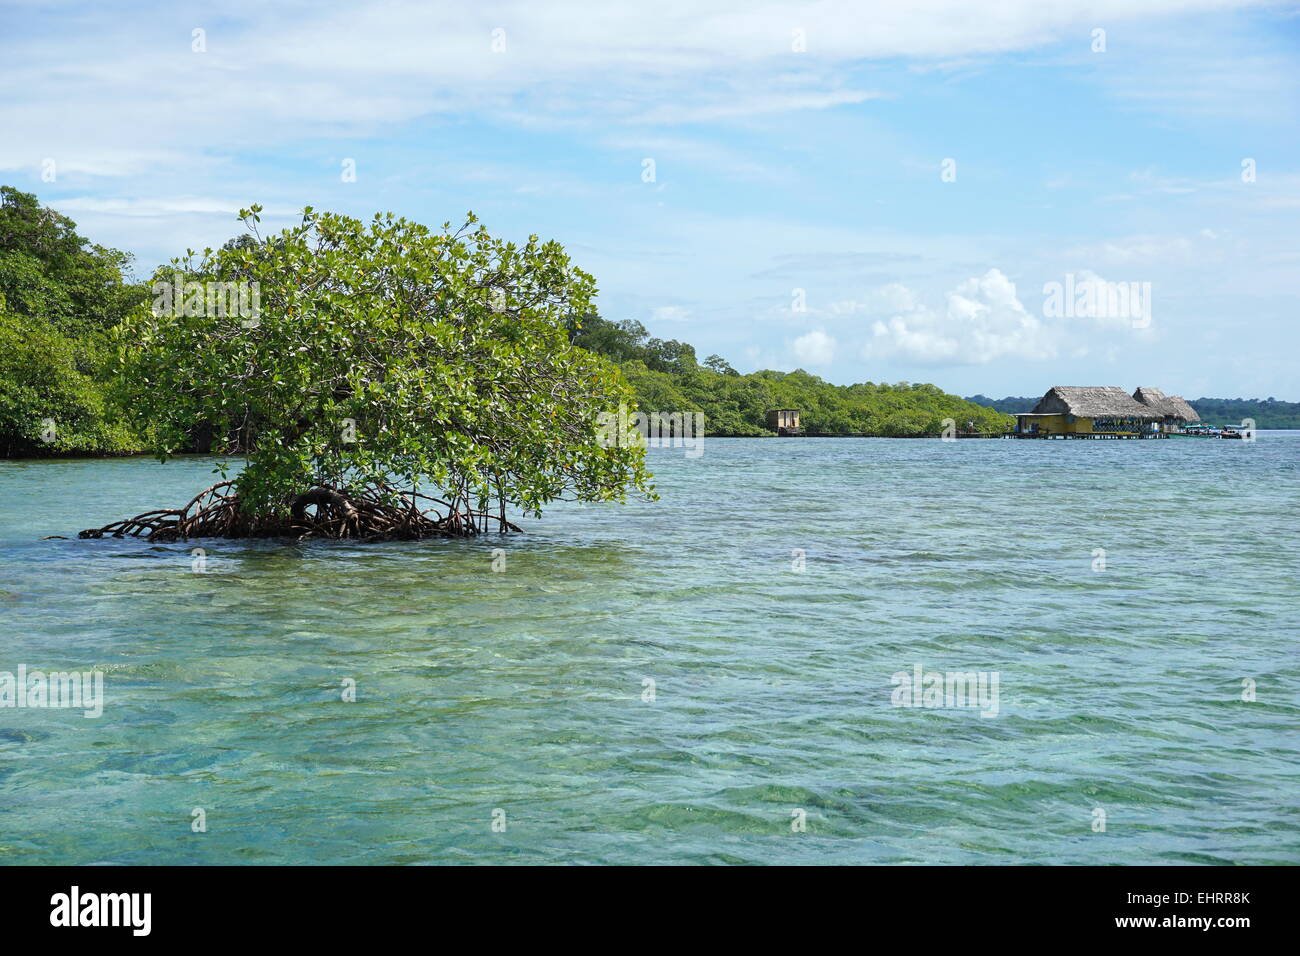 Abgeschiedenen Mangroven-Baum im Wasser mit einem tropischen Restaurant im Hintergrund, Karibik, Panama, Archipel Bocas del Toro Stockfoto